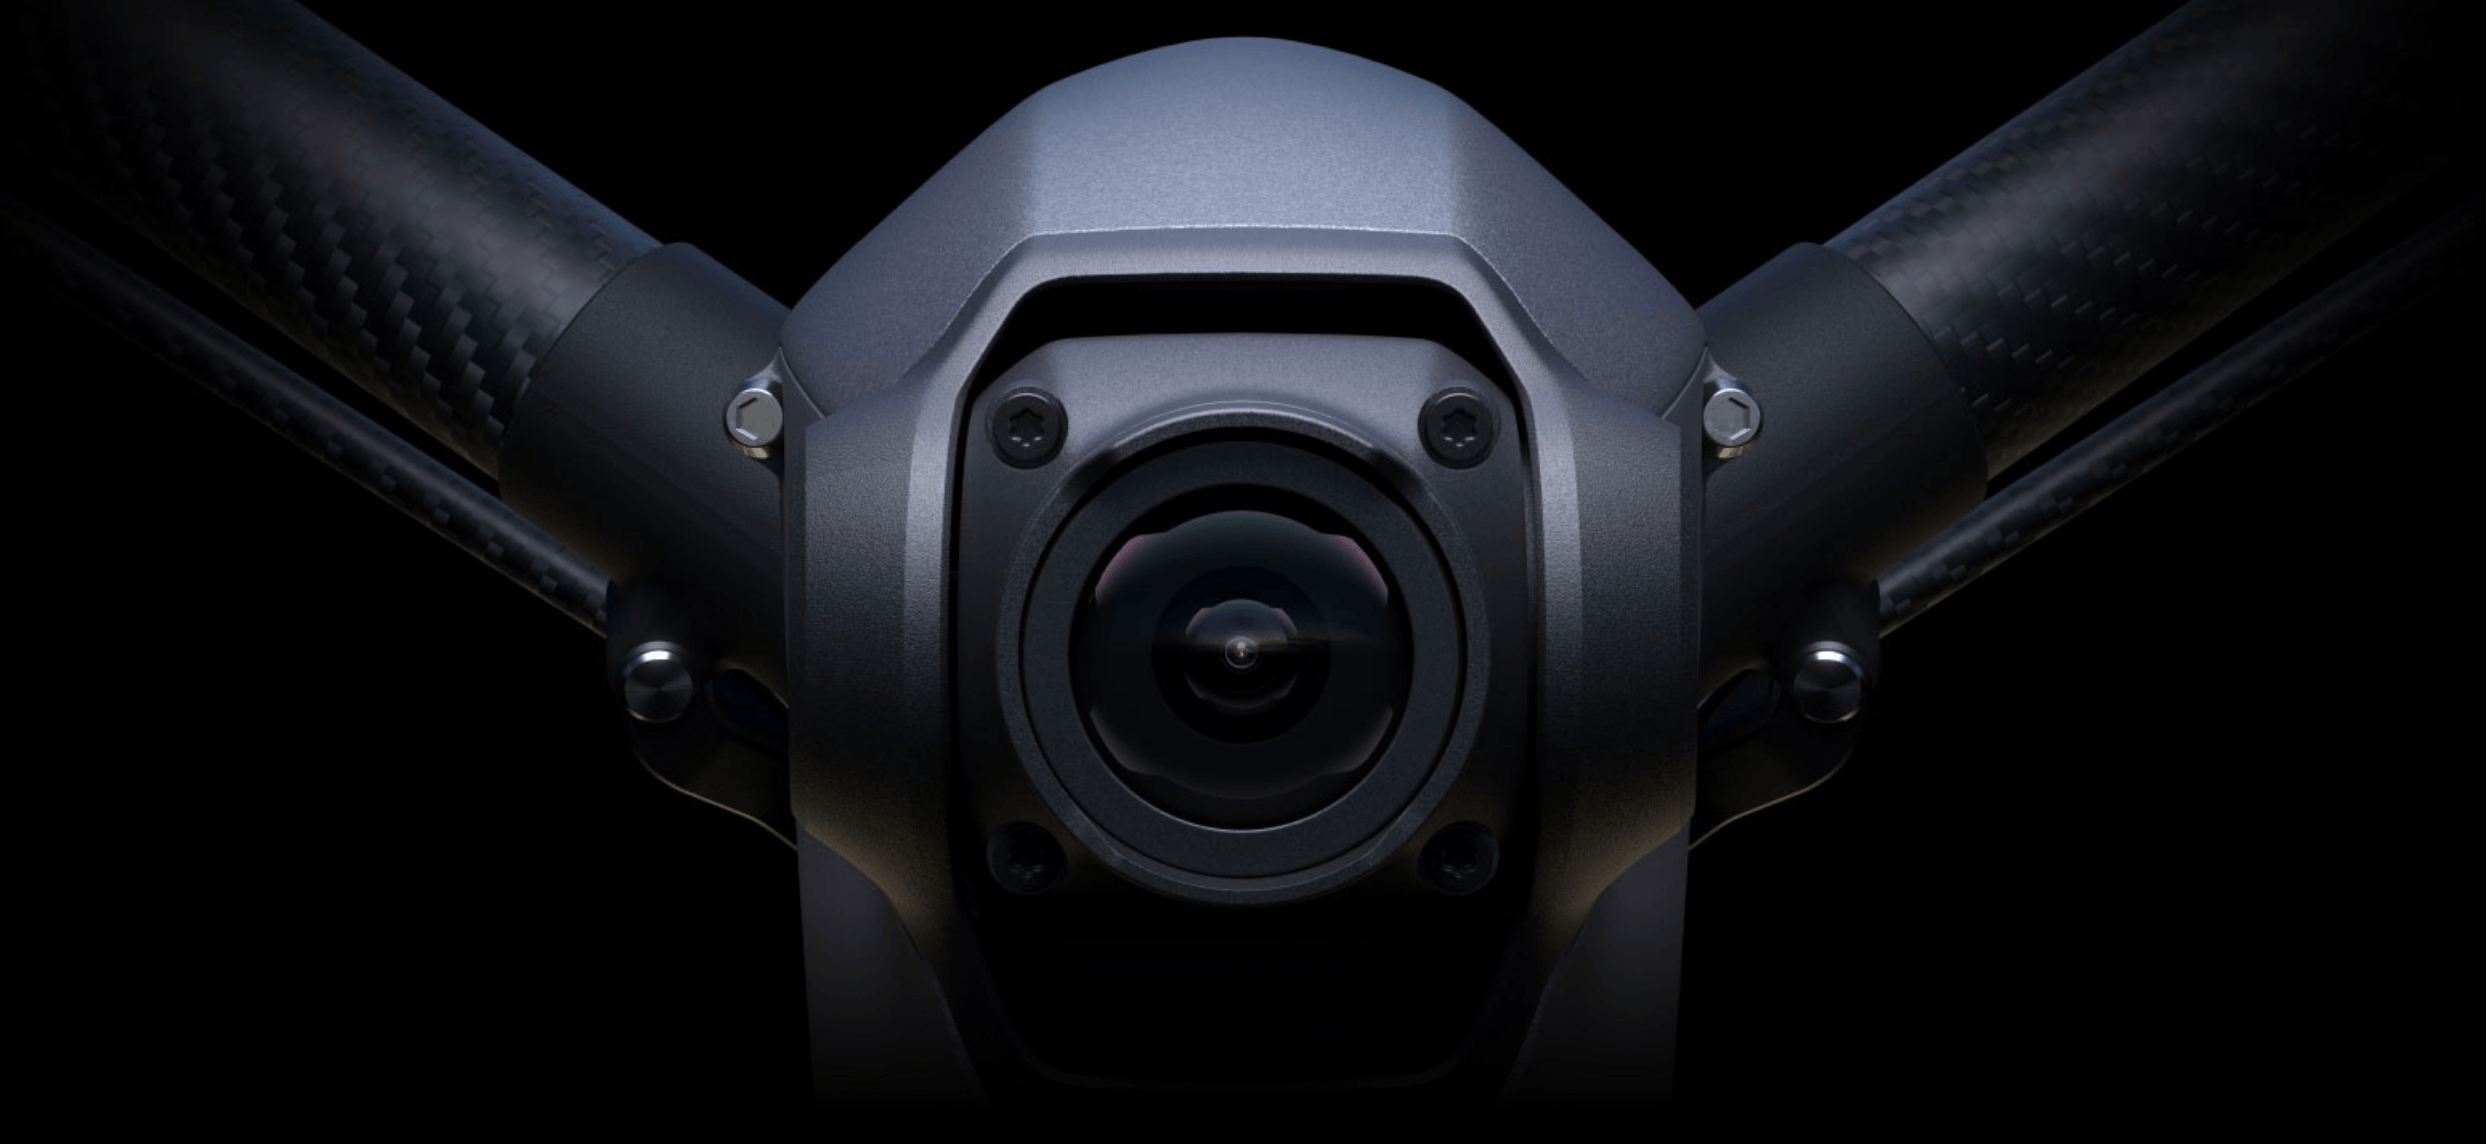 Imagem frontal do drone focado em sua câmera